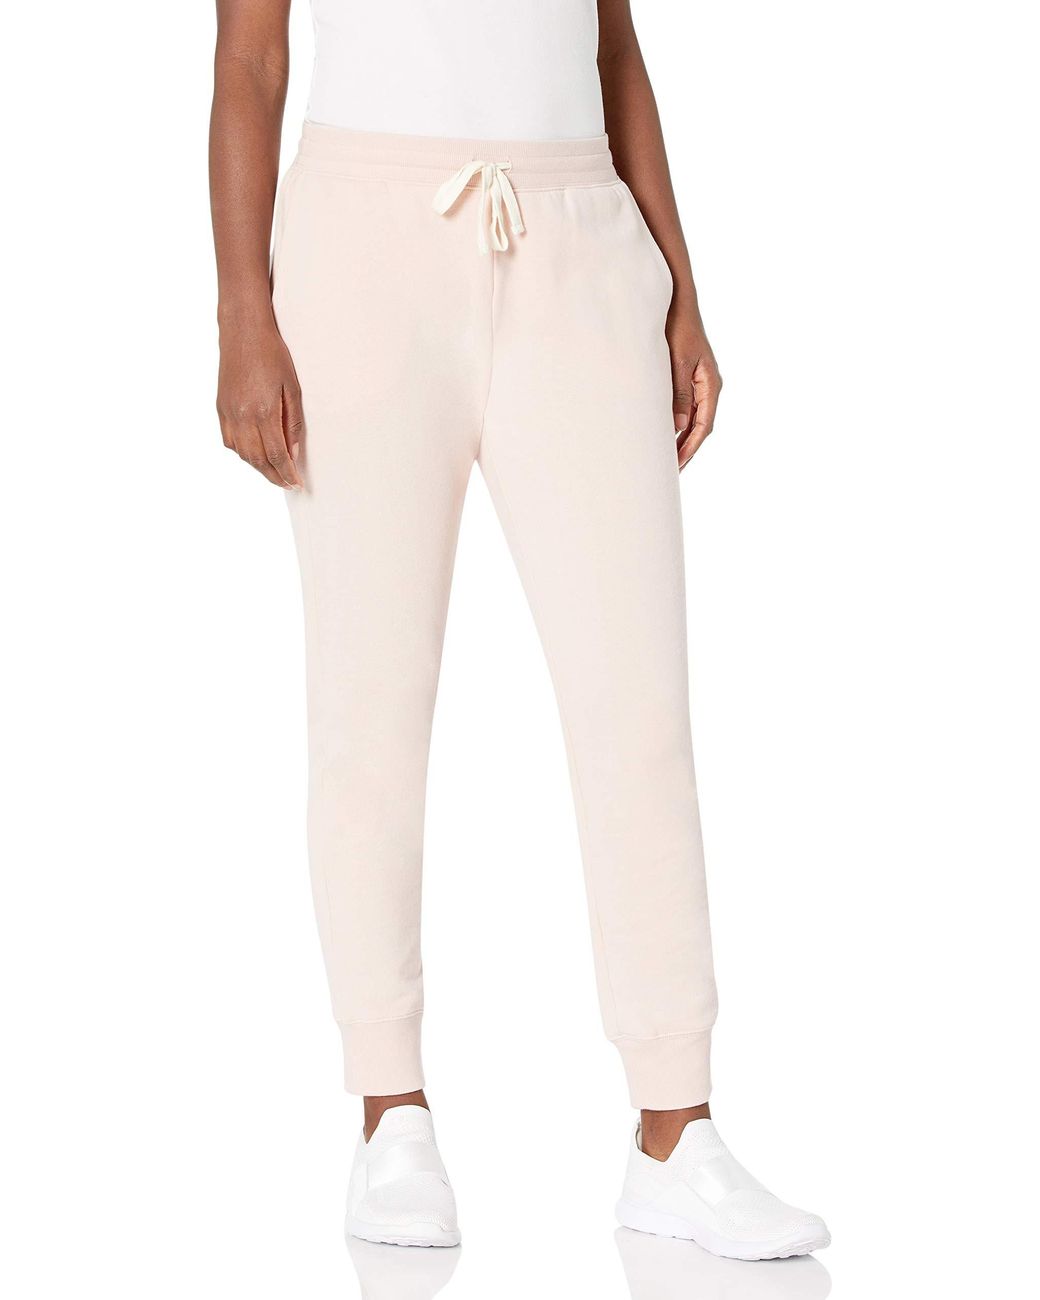 Visiter la boutique Amazon EssentialsEssentials Pantalon de survêtement en Polaire éponge Femme Taille Plus 